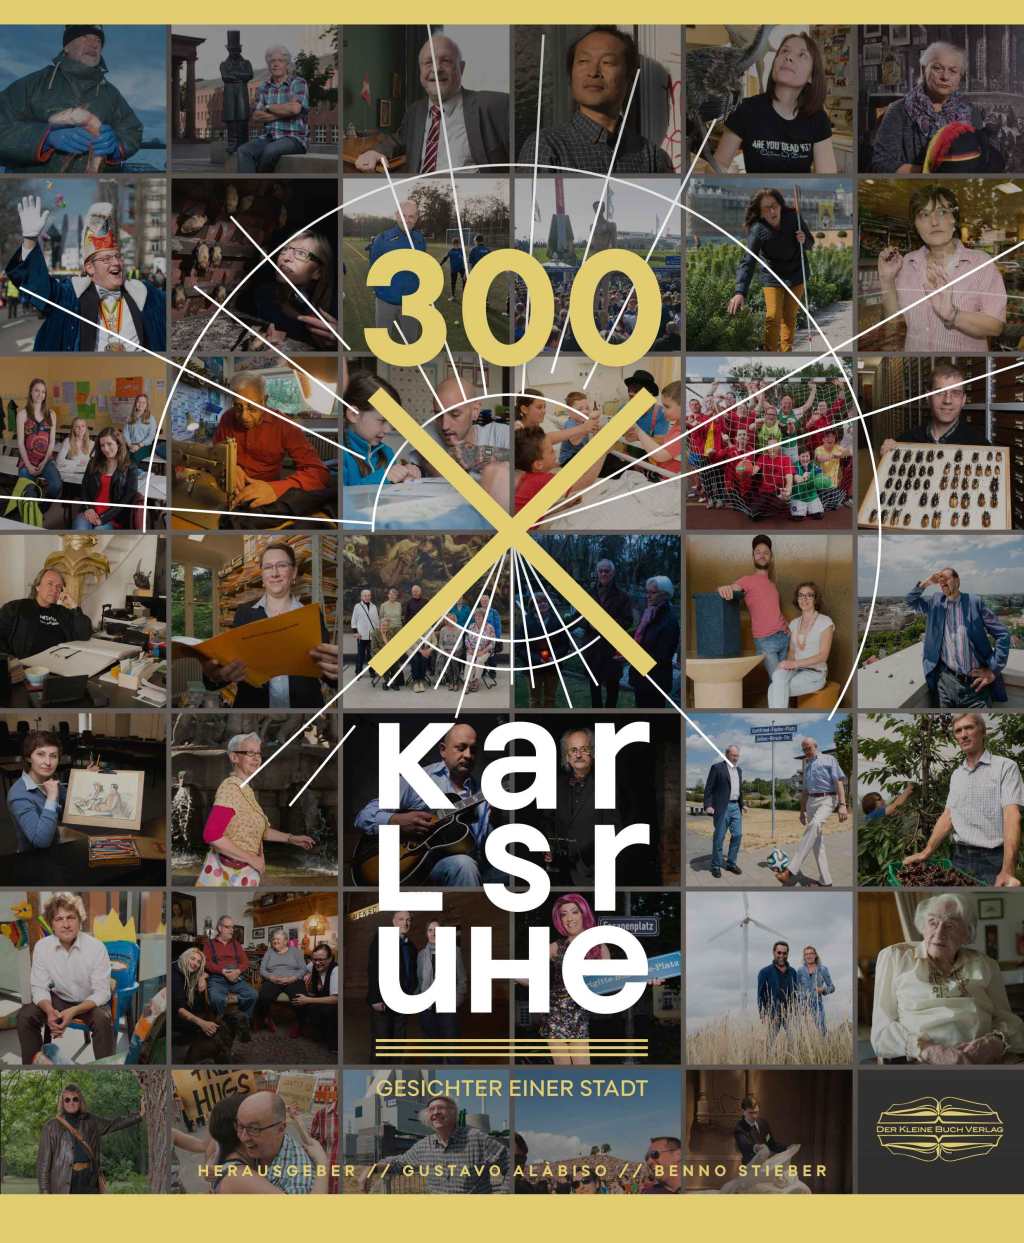 300 x Karlsruhe – Gesichter einer Stadt